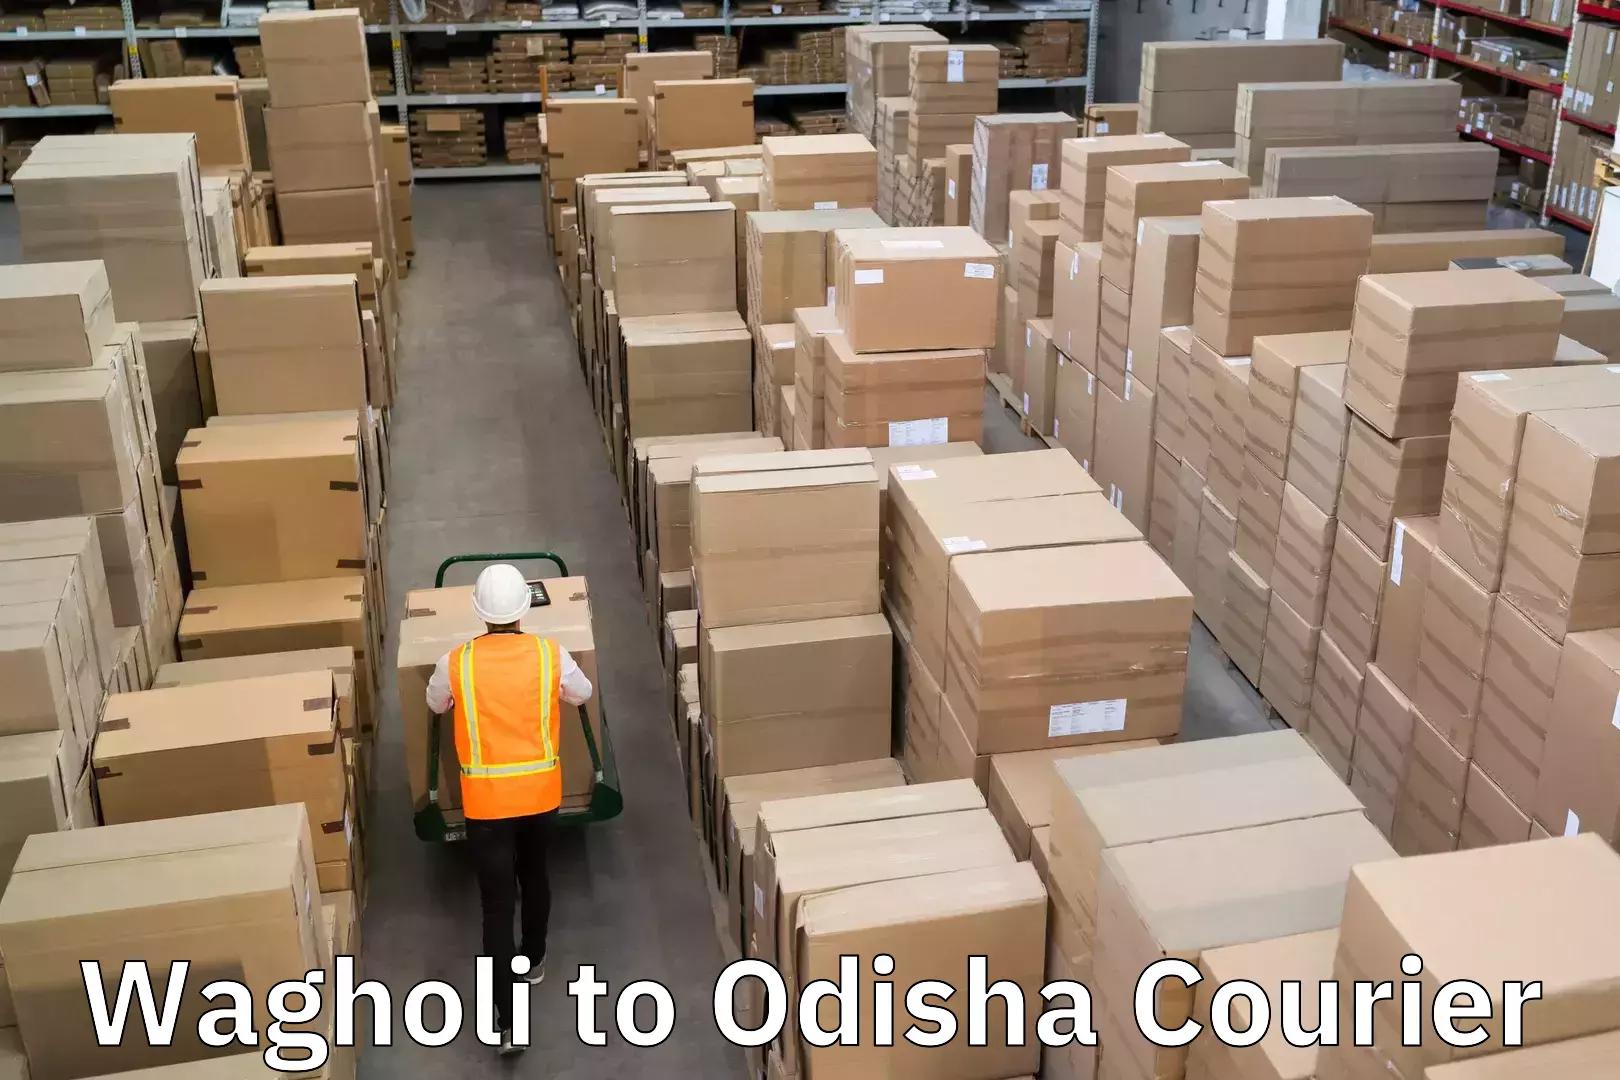 Digital courier platforms Wagholi to Odisha